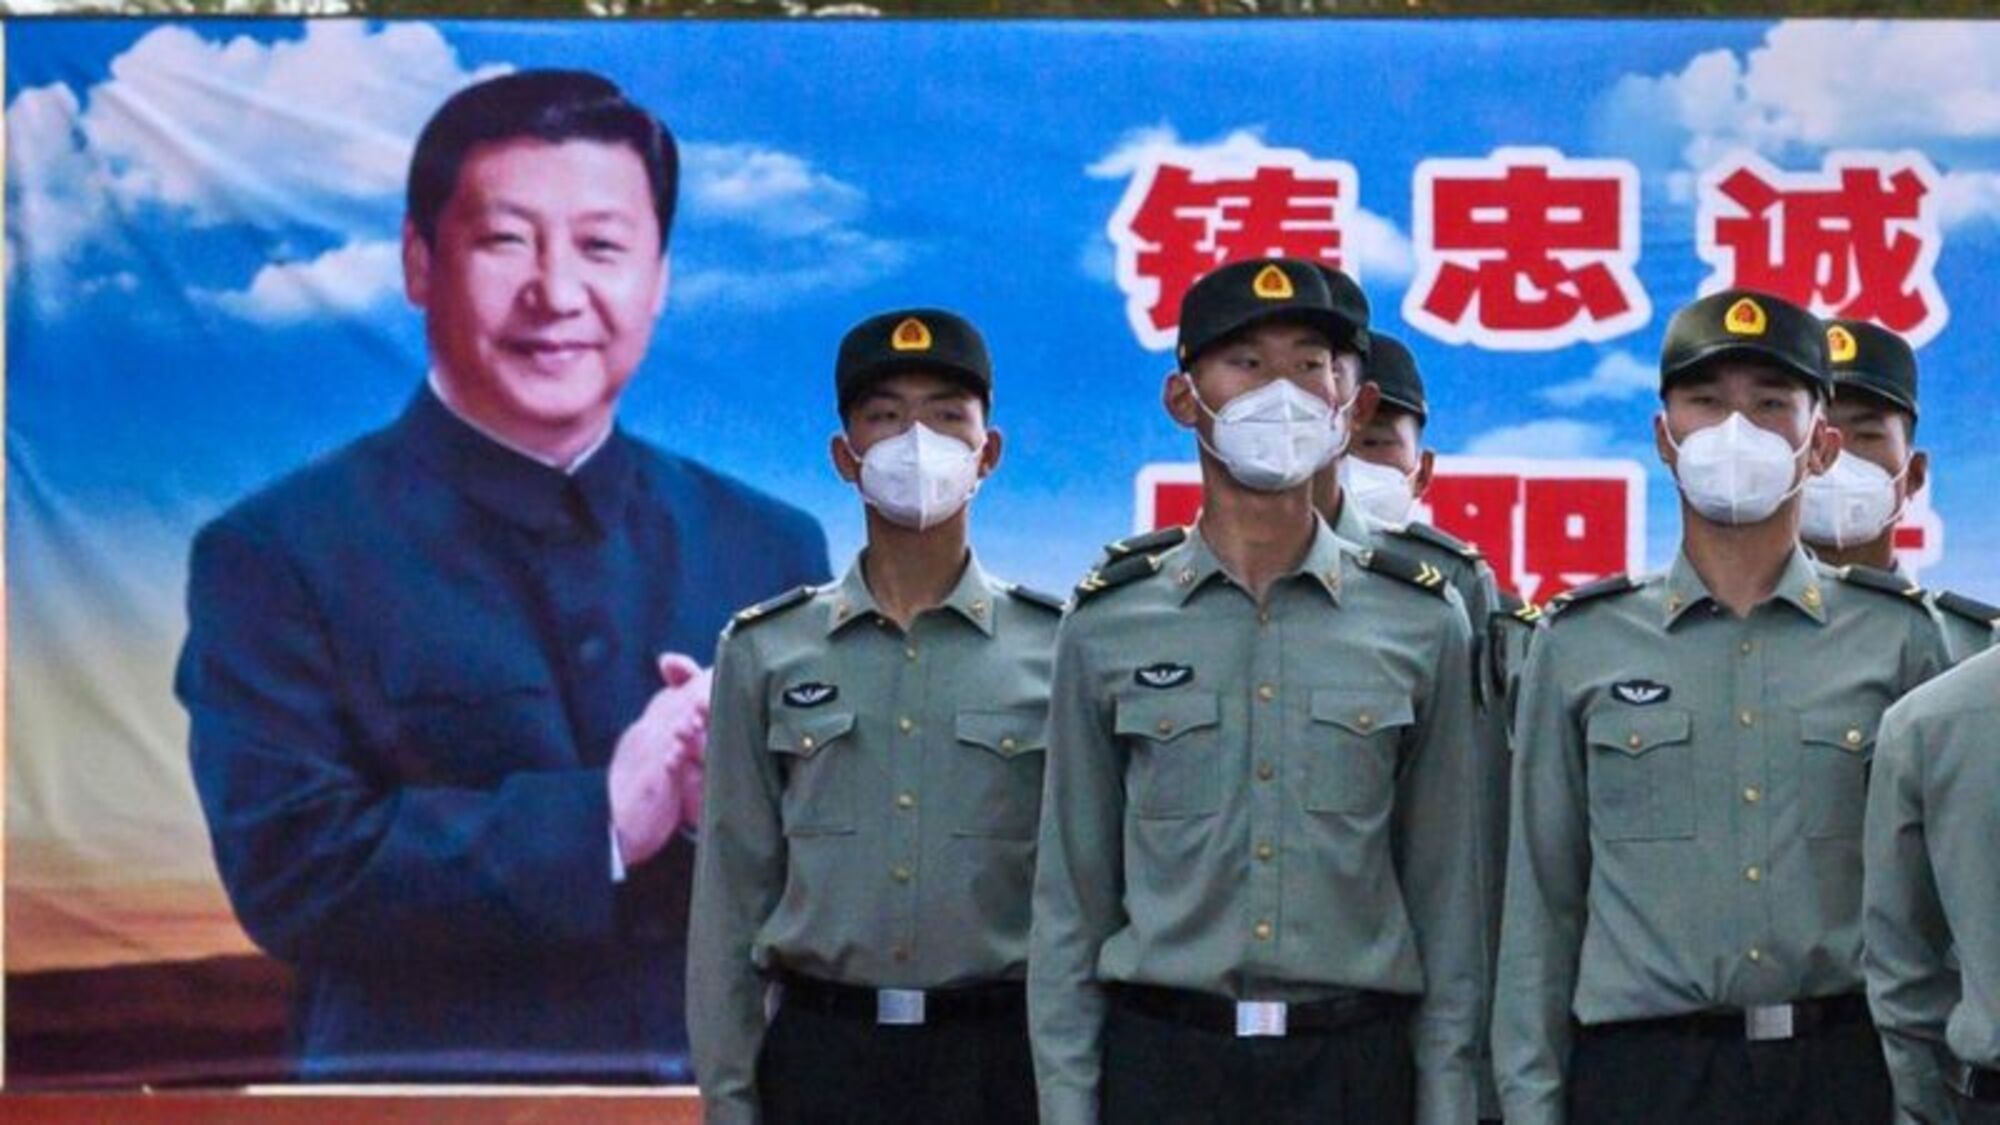 La pandemia del coronavirus sirvió para que Xi Jinping consolidara un poder en China como no se veía desde los tiempos de Mao